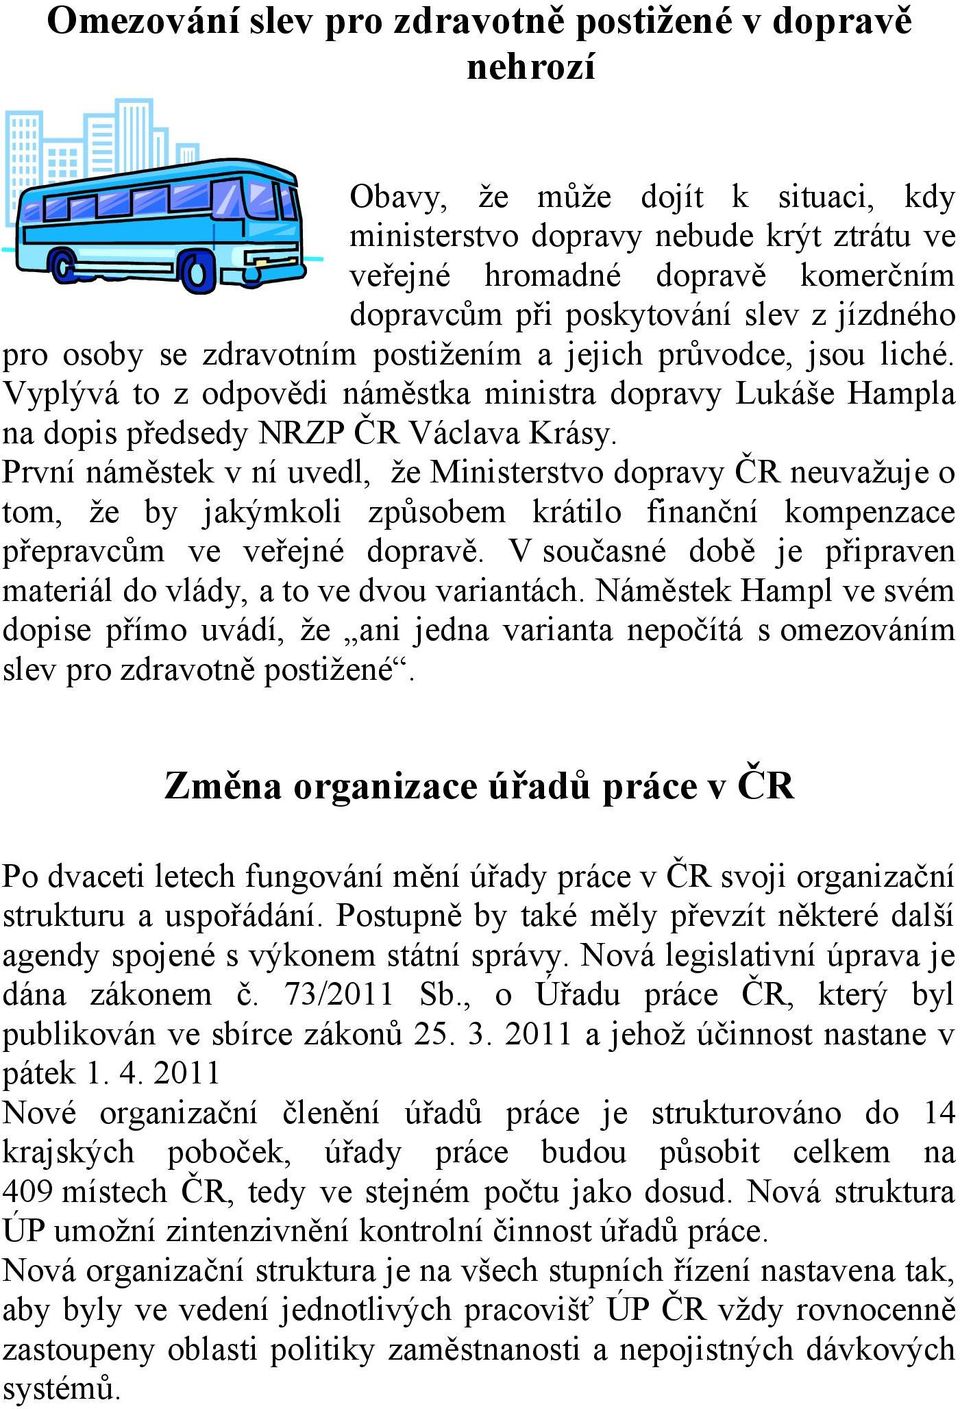 První náměstek v ní uvedl, že Ministerstvo dopravy ČR neuvažuje o tom, že by jakýmkoli způsobem krátilo finanční kompenzace přepravcům ve veřejné dopravě.